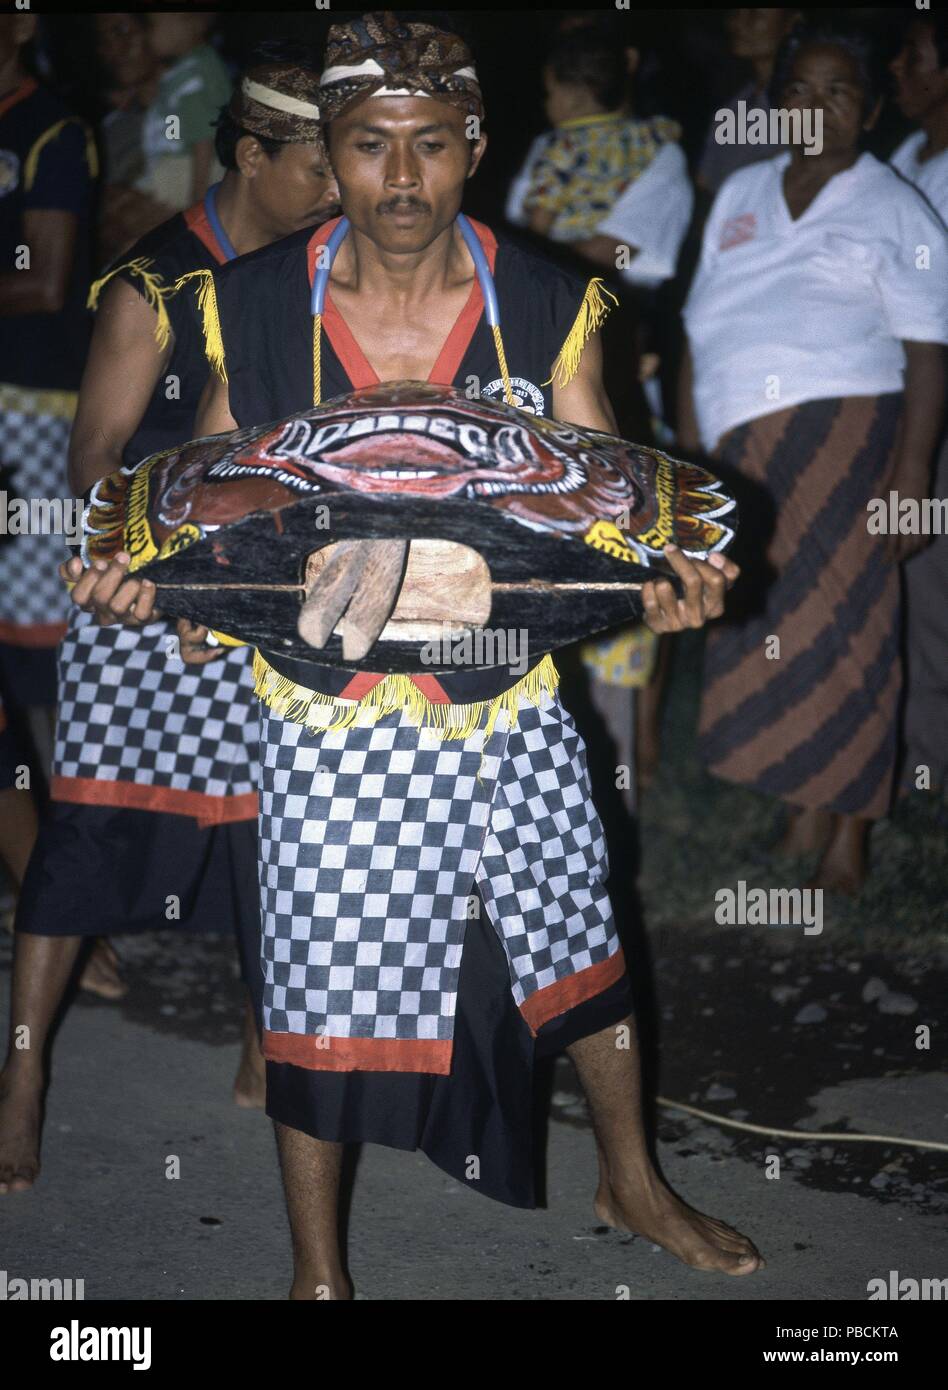 ESPECTACULO-DANZAS BARONG-HOMBRES CON TRAJES TIPICOS Y CARETAS. Posizione: KERAMBITAN-PAL PRINC, Indonesia. Foto Stock